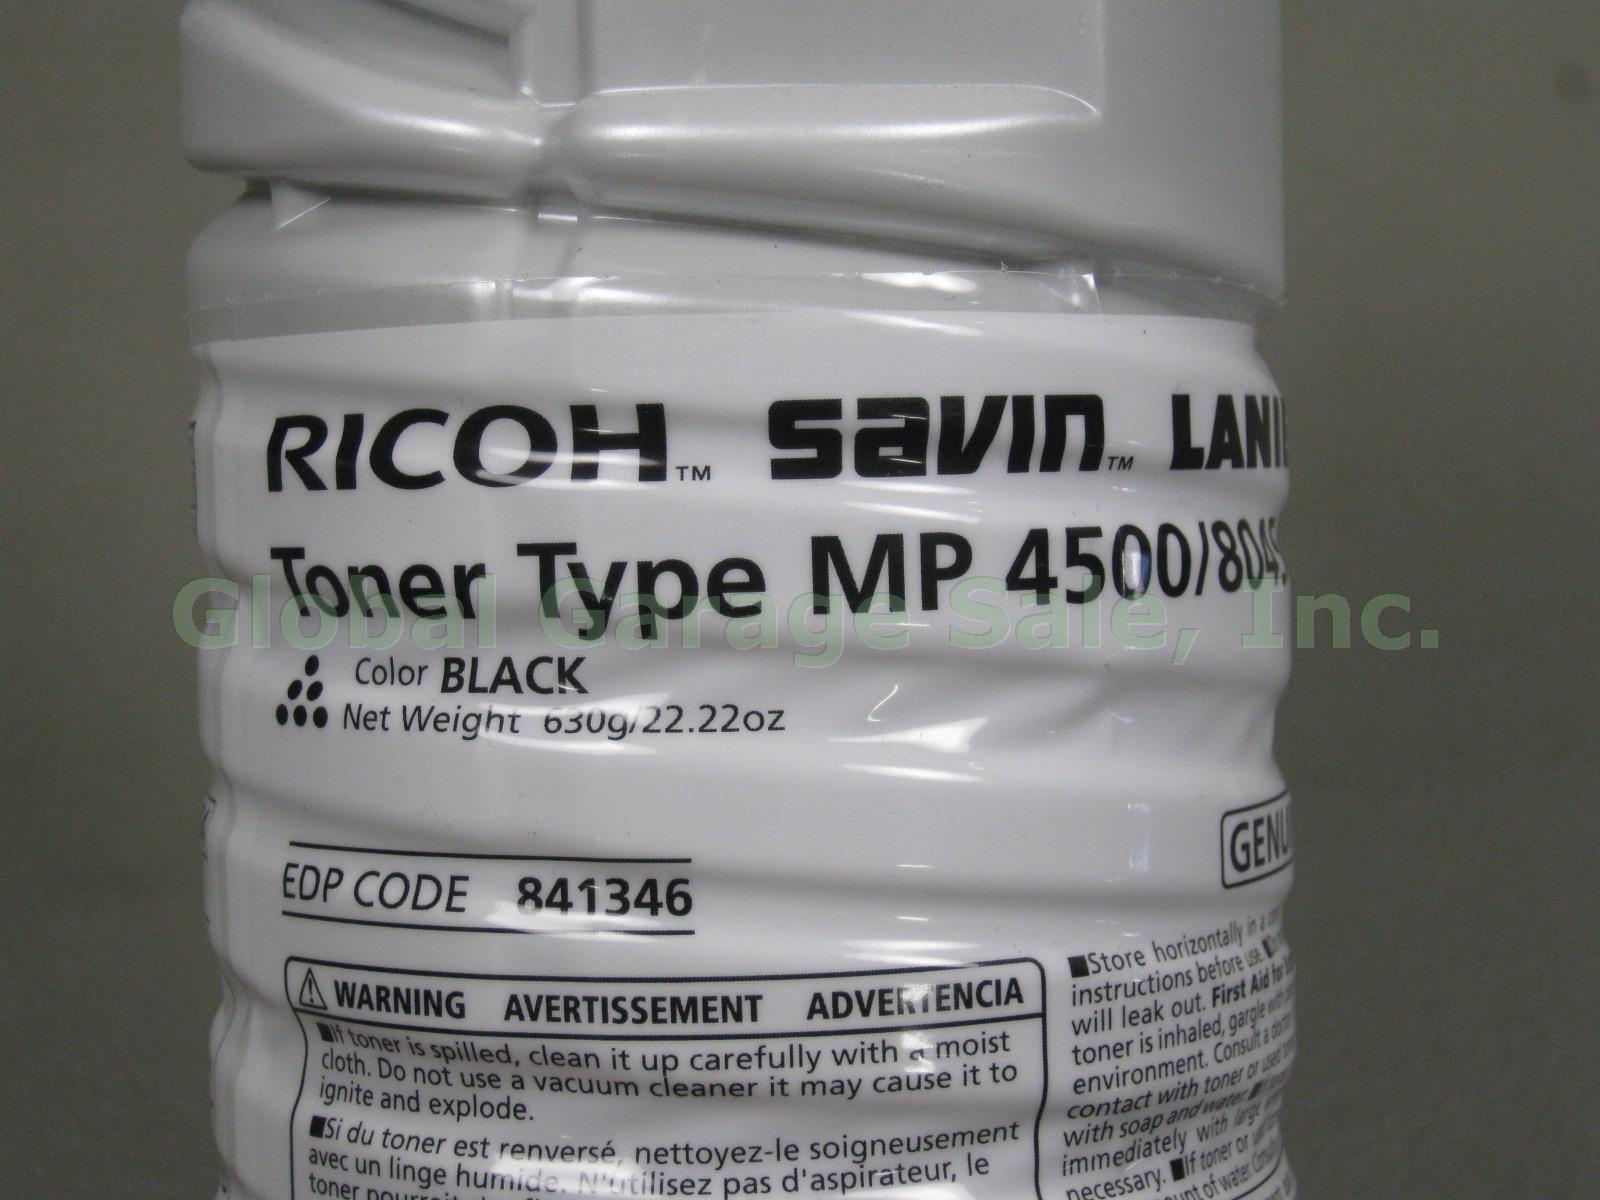 9 Ricoh Savin Lanier Toner Type MP4500 8045e LD345 Black EDP Code 841346 Lot NR! 1